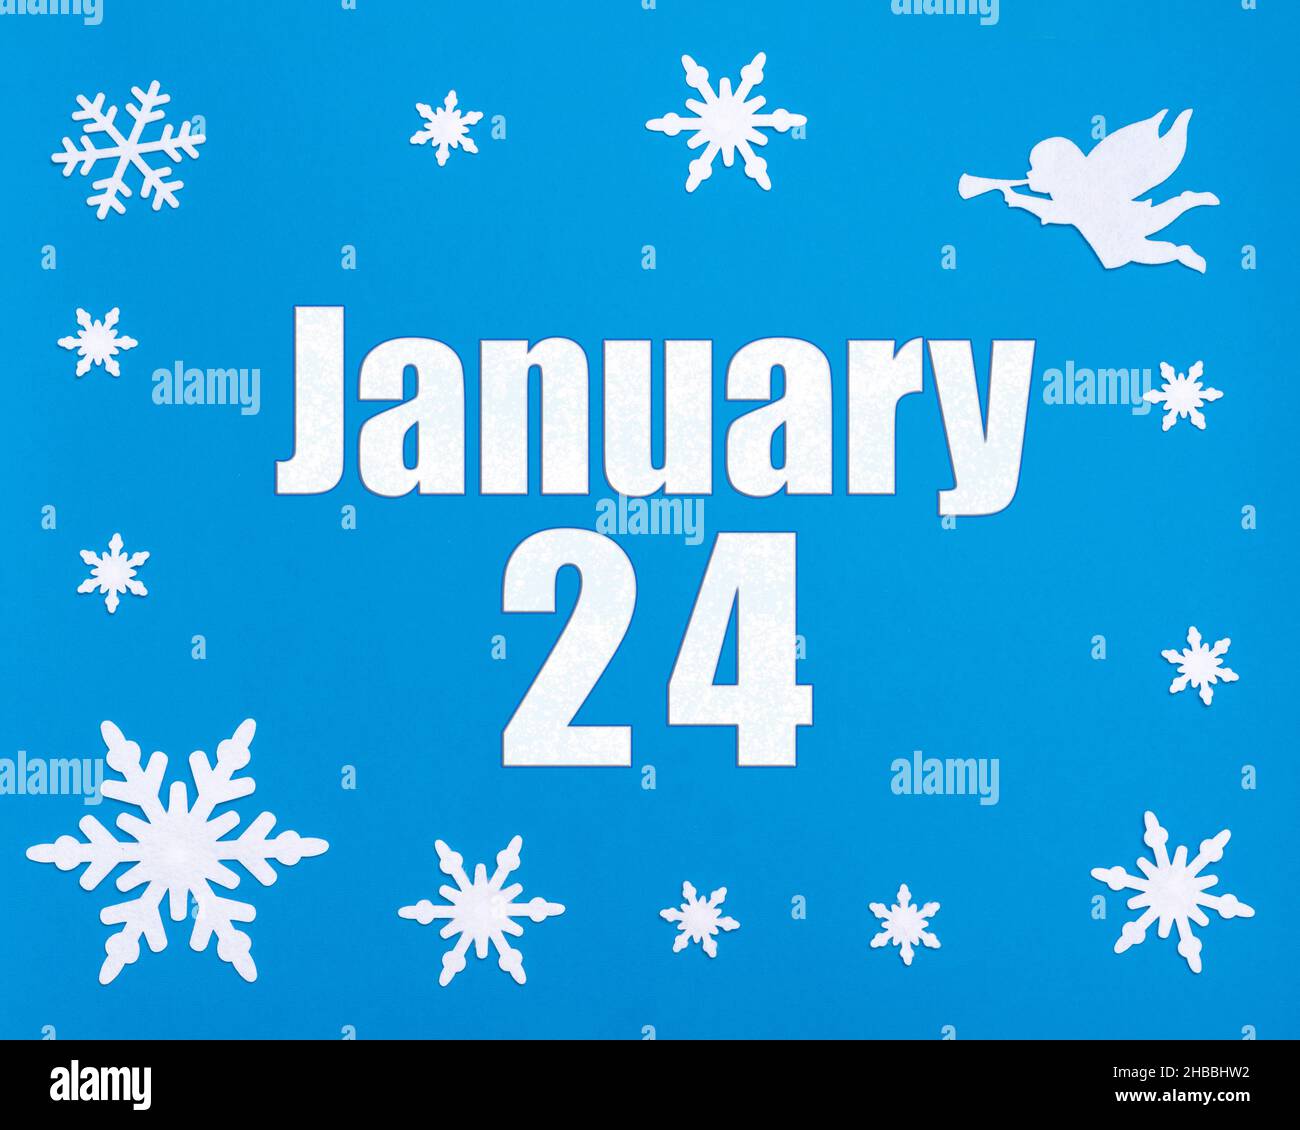 Januar 24th. Winter blauer Hintergrund mit Schneeflocken, Engel und einem Kalenderdatum. Tag 24 des Monats. Winter Monat, Tag des Jahres Konzept. Stockfoto